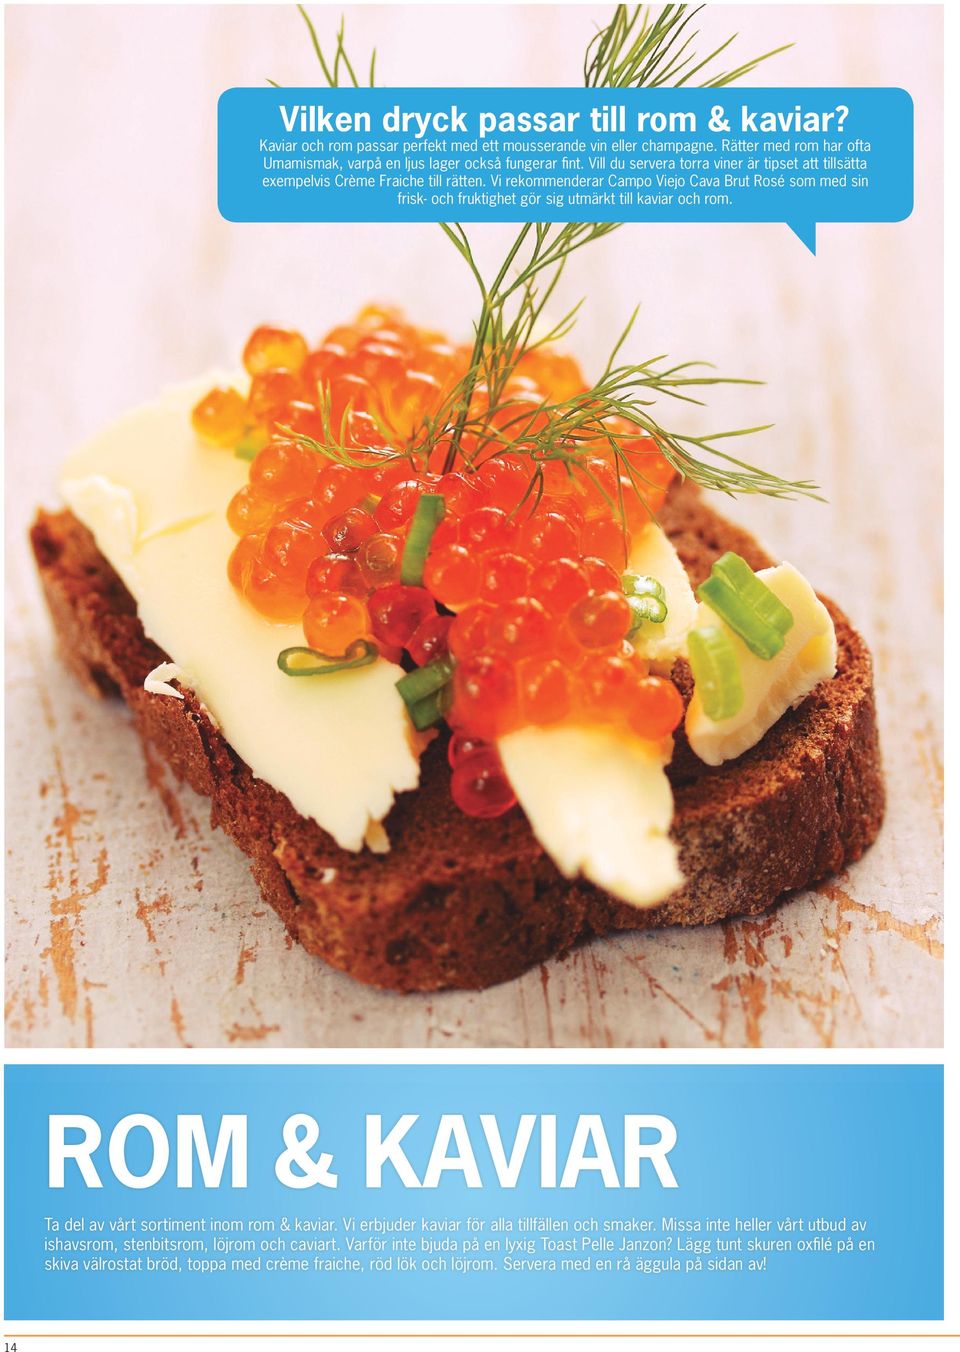 Vi rekommenderar Campo Viejo Cava Brut Rosé som med sin frisk- och fruktighet gör sig utmärkt till kaviar och rom. ROM & KAVIAR Ta del av vårt sortiment inom rom & kaviar.